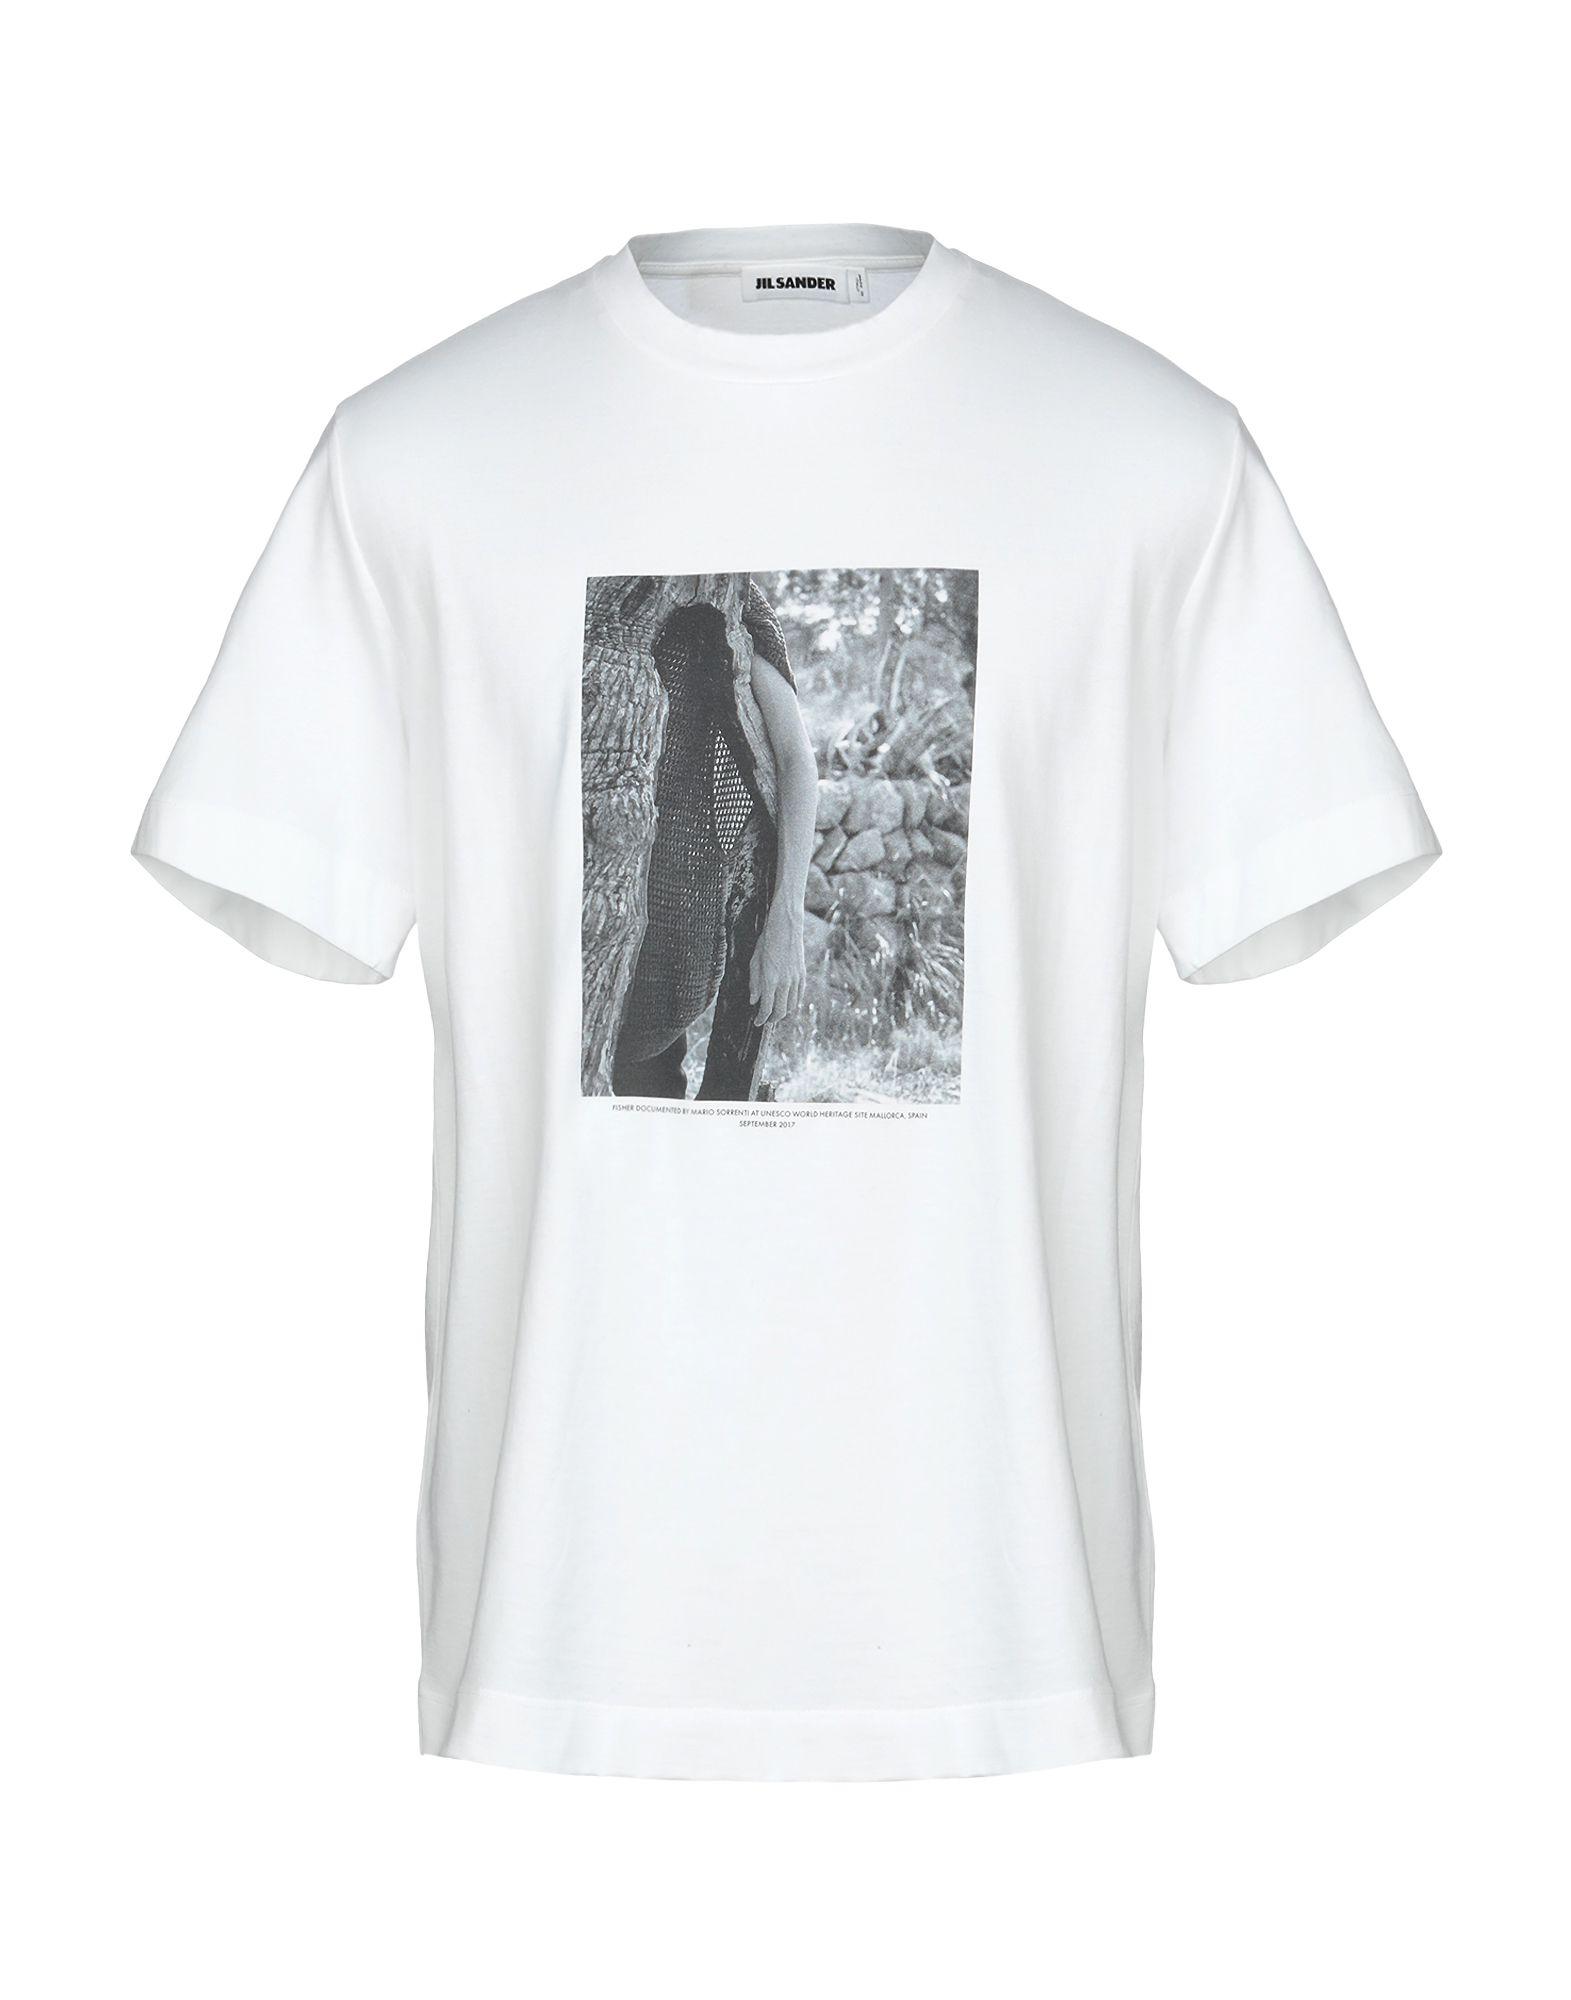 Jil Sander T-shirt in White for Men - Lyst